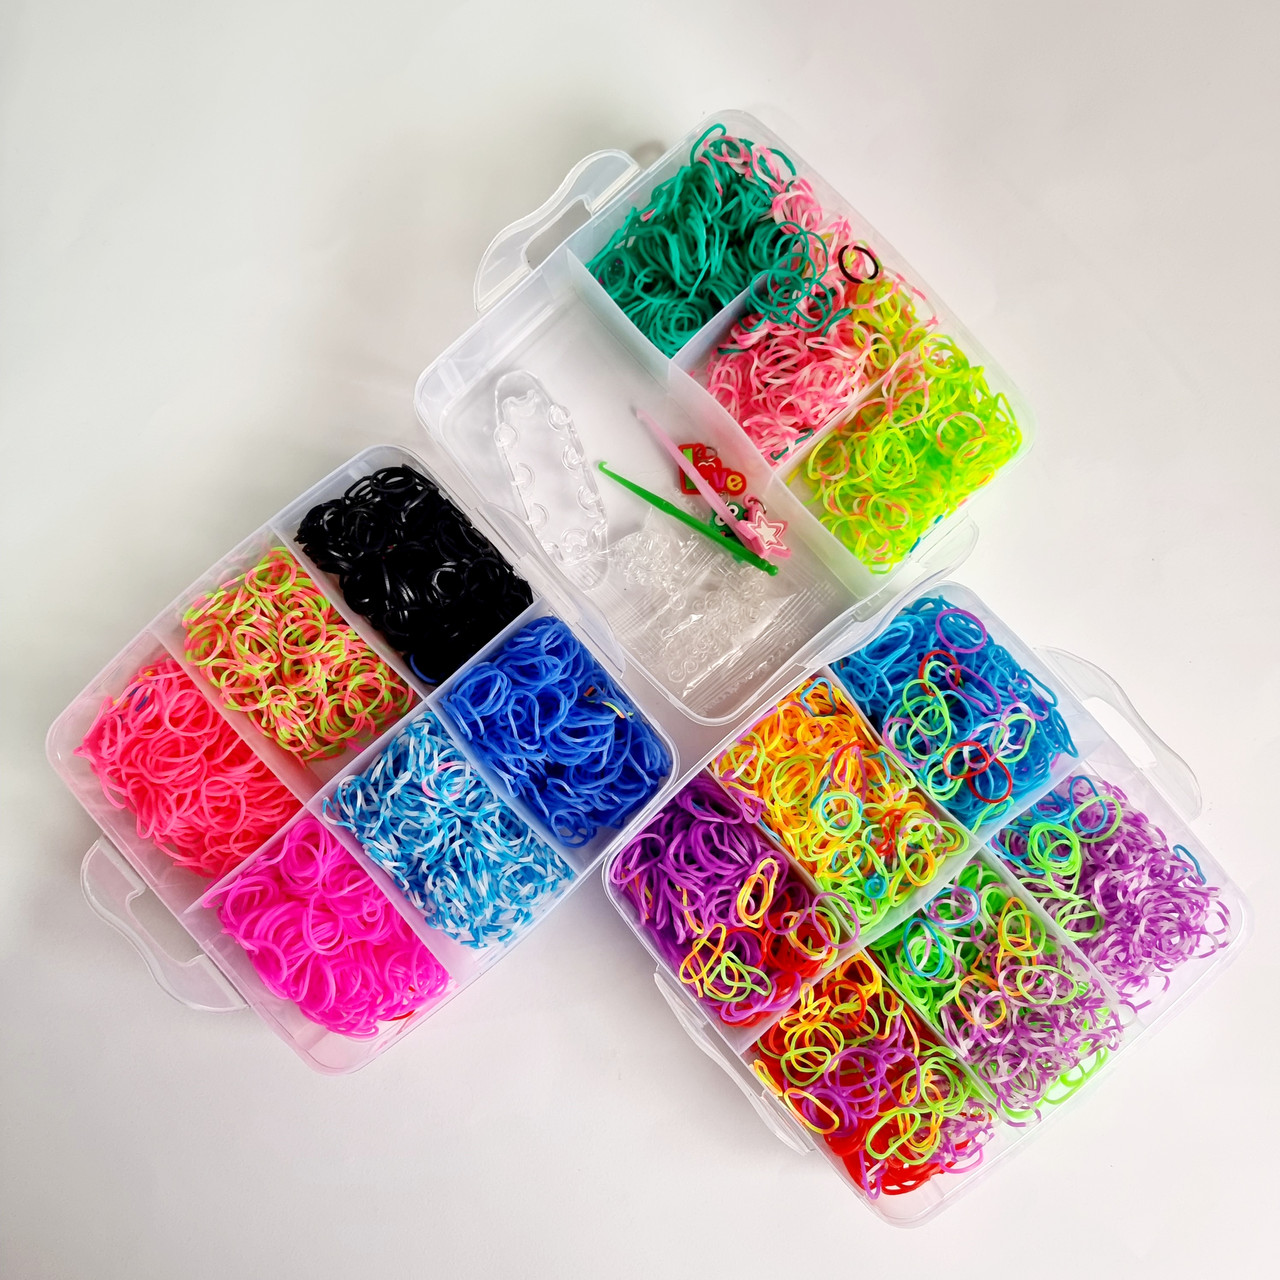 Набор для плетения браслетов из резинок Fashion loom bands двухуровневый  кейс 15600 резинок!!! (ID#1320699576), цена: 1185 ₴, купить на